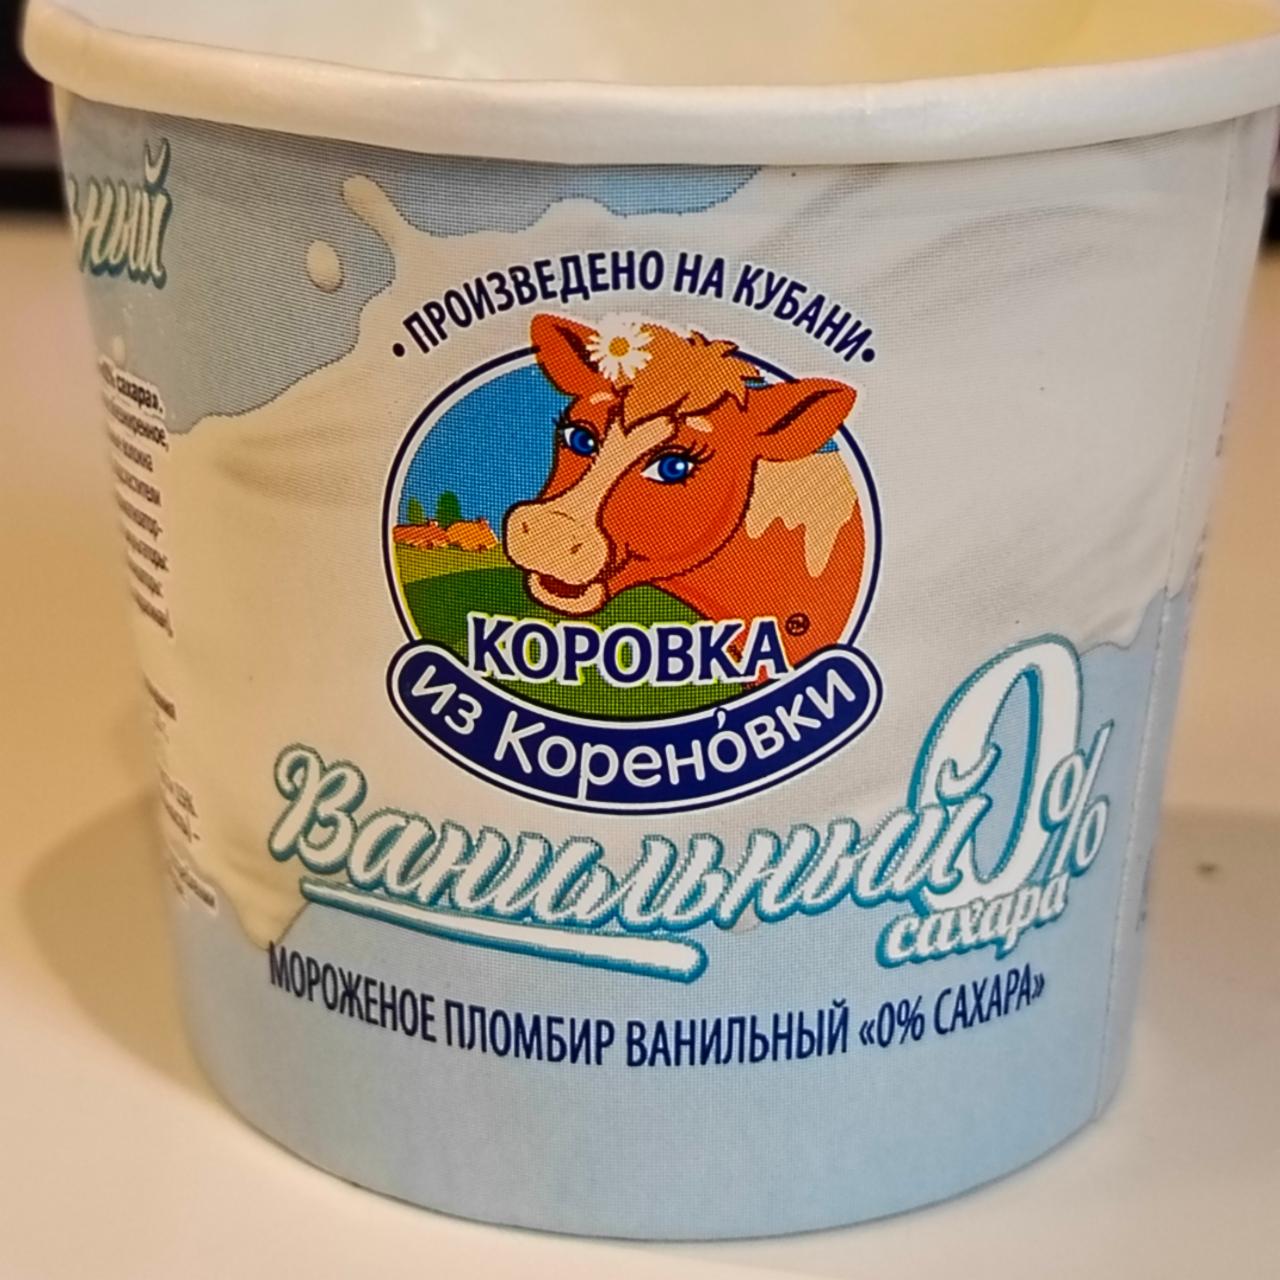 Фото - Мороженное пломбир ванильный 0% сахара Коровка из Кореновки